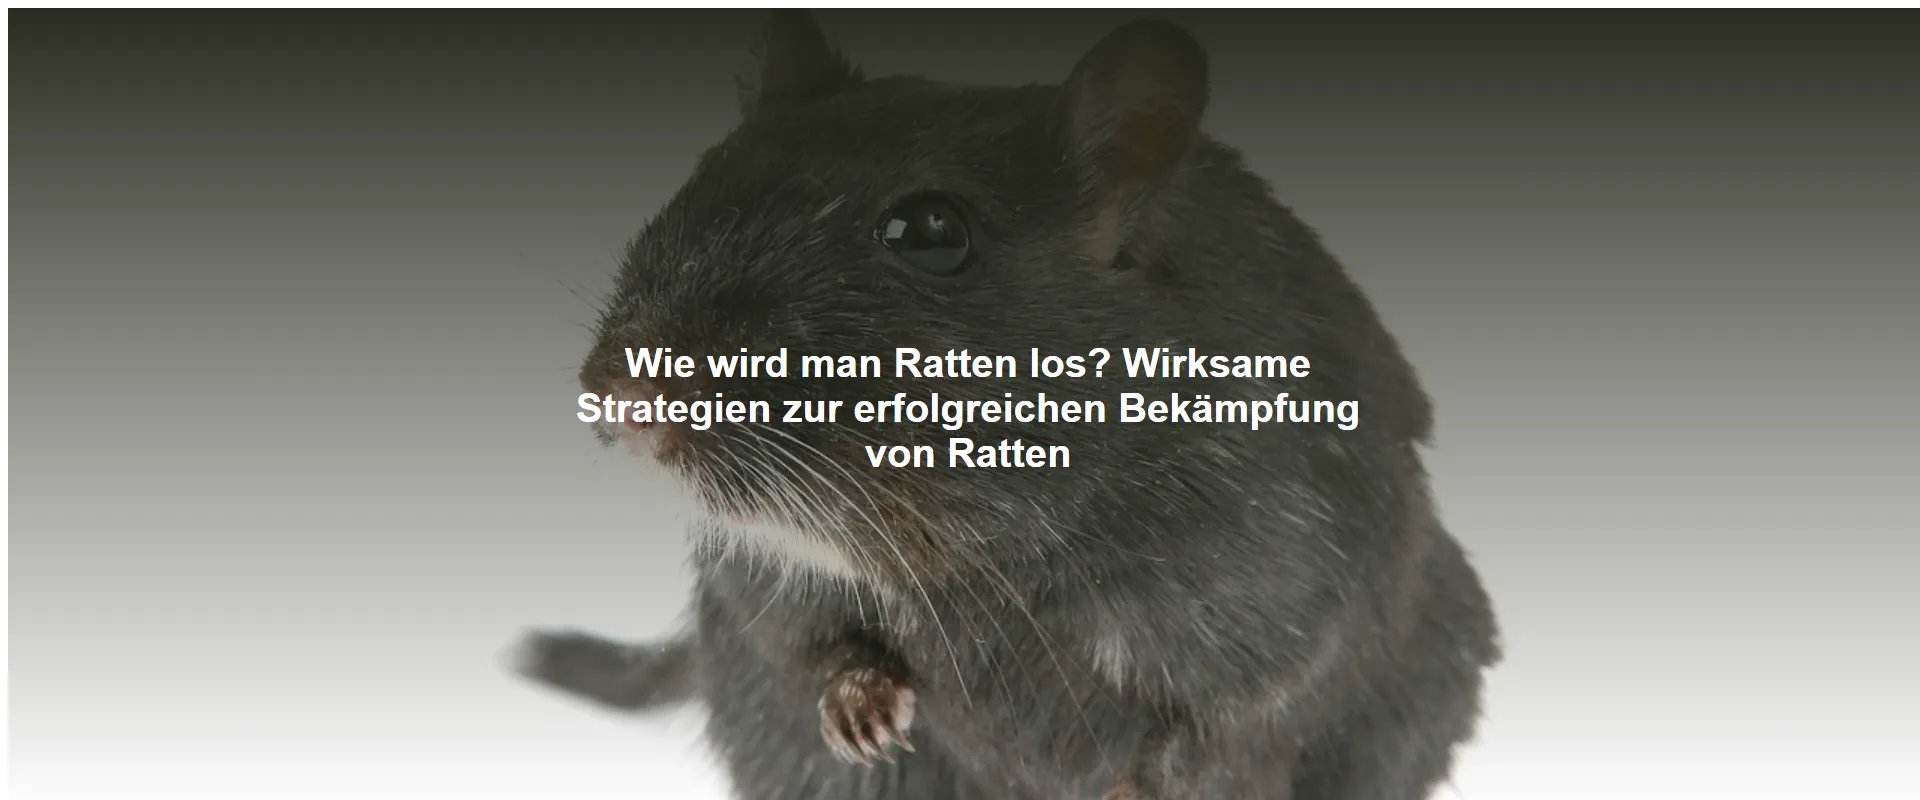 Wie wird man Ratten los? Wirksame Strategien zur erfolgreichen Bekämpfung von Ratten